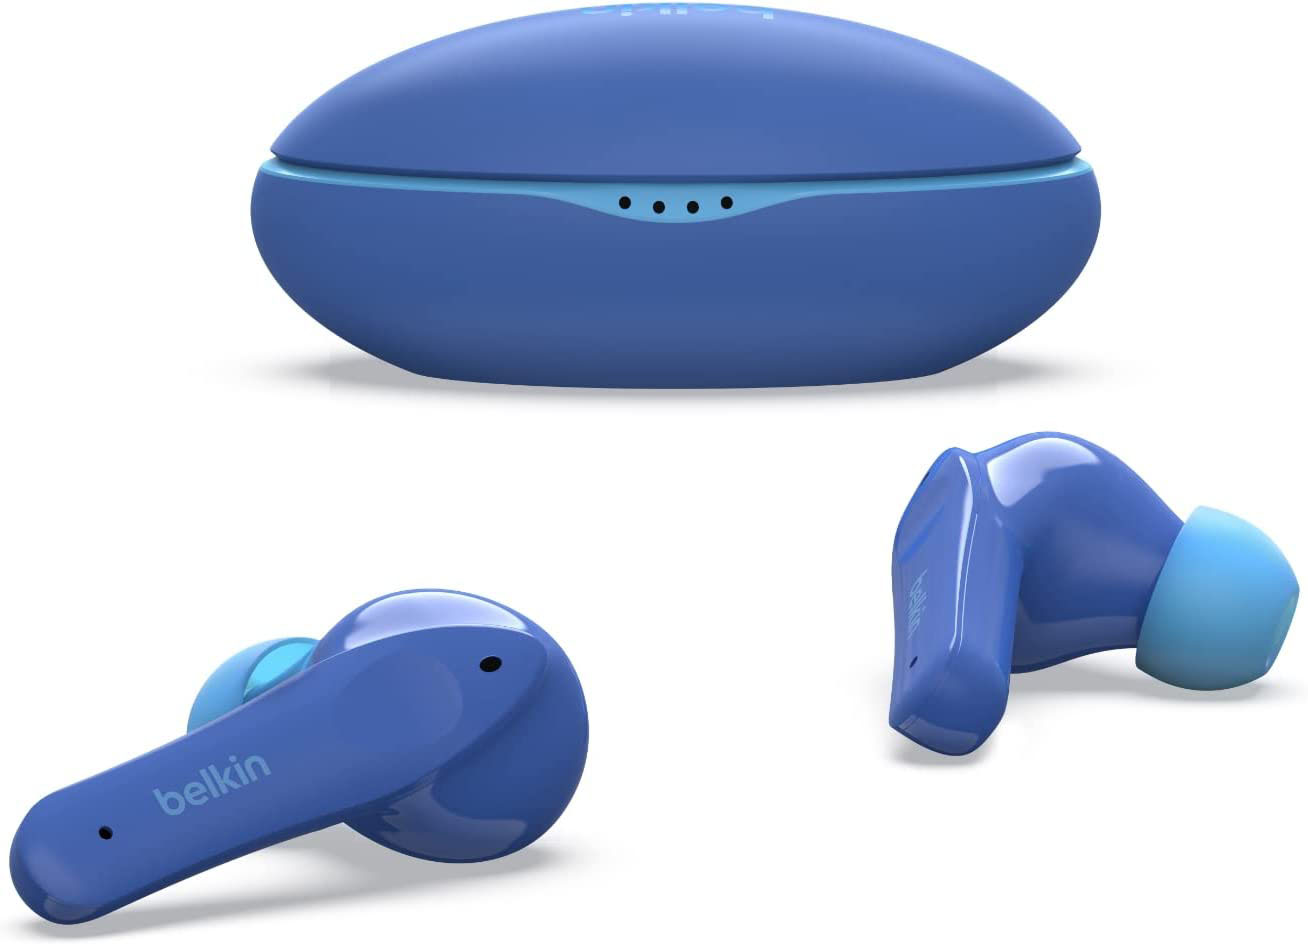 Belkin SoundForm: Nano jetzt verfügbar, Mini im Preis halbiert ›